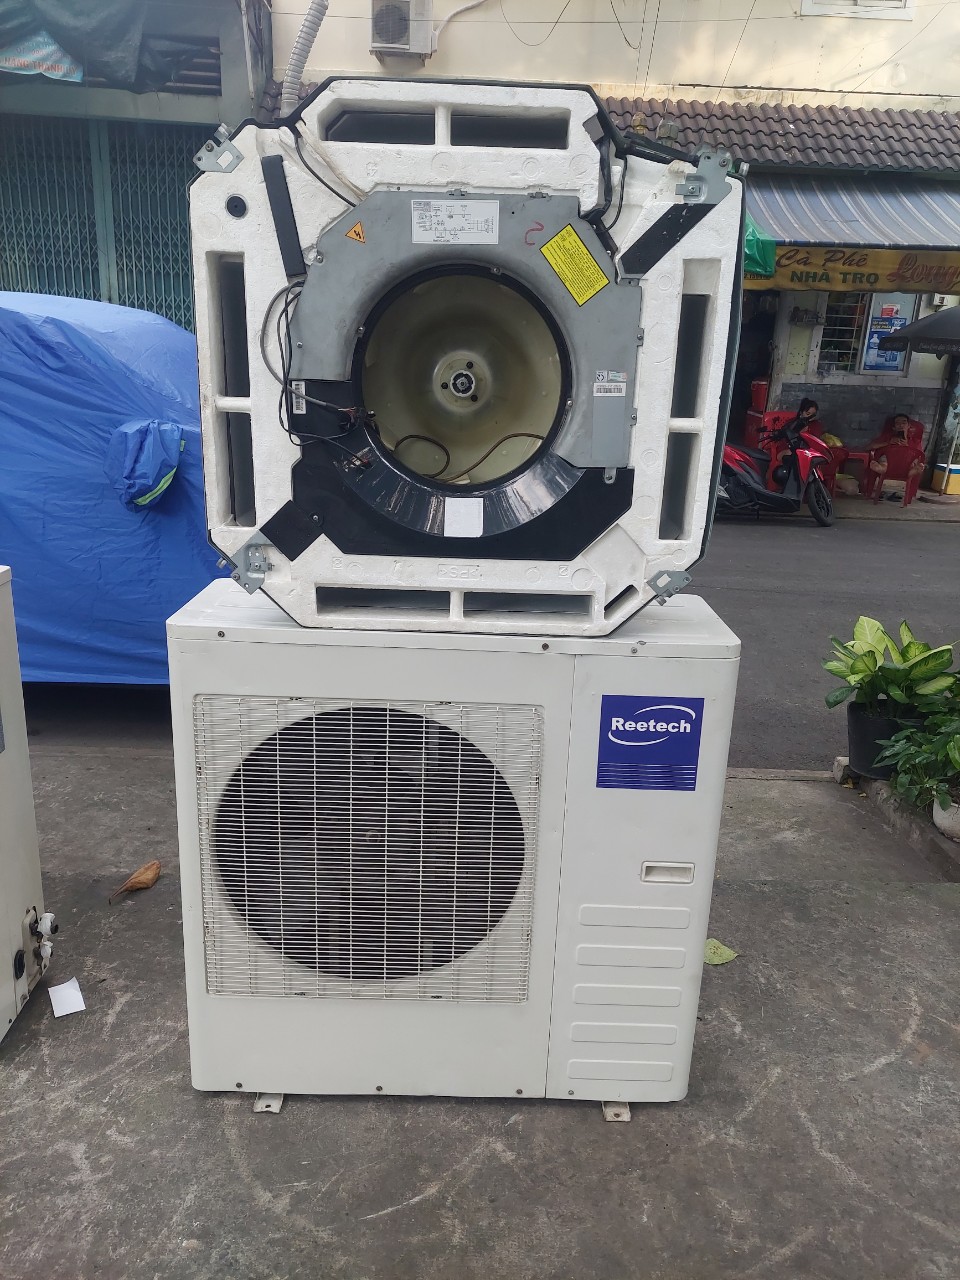 Bán máy lạnh cũ quận 7 【✔️Top 1 hcm】 | Mua máy lạnh cũ chính hãng có kiểm định rõ ràng. Mua máy lạnh đã qua sử dụng giá tốt, đảm bảo uy tín.